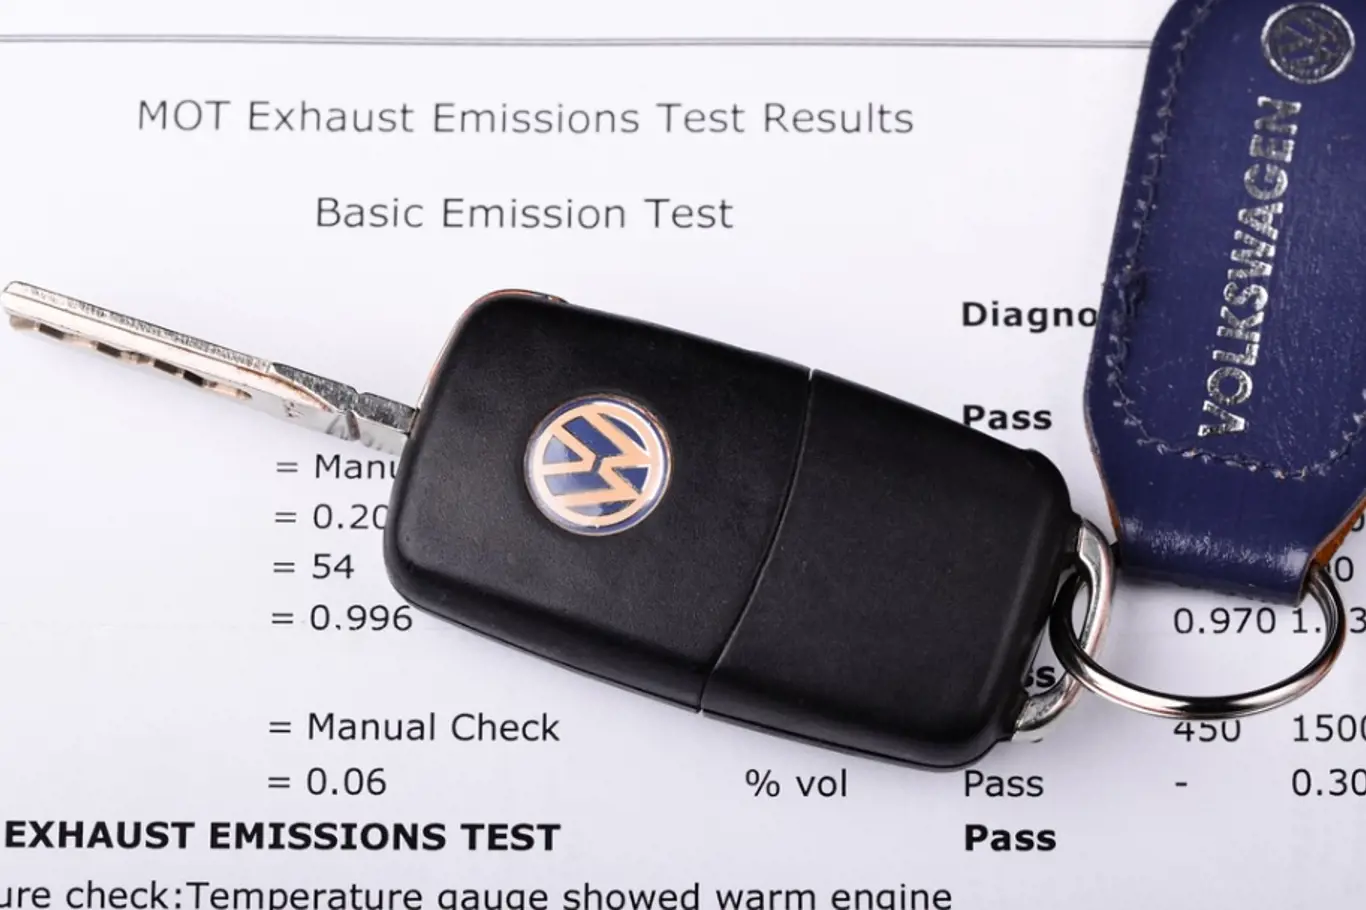 Podvody s emisemi u dieselových motorů VW vyšly najevo v září 2015. 